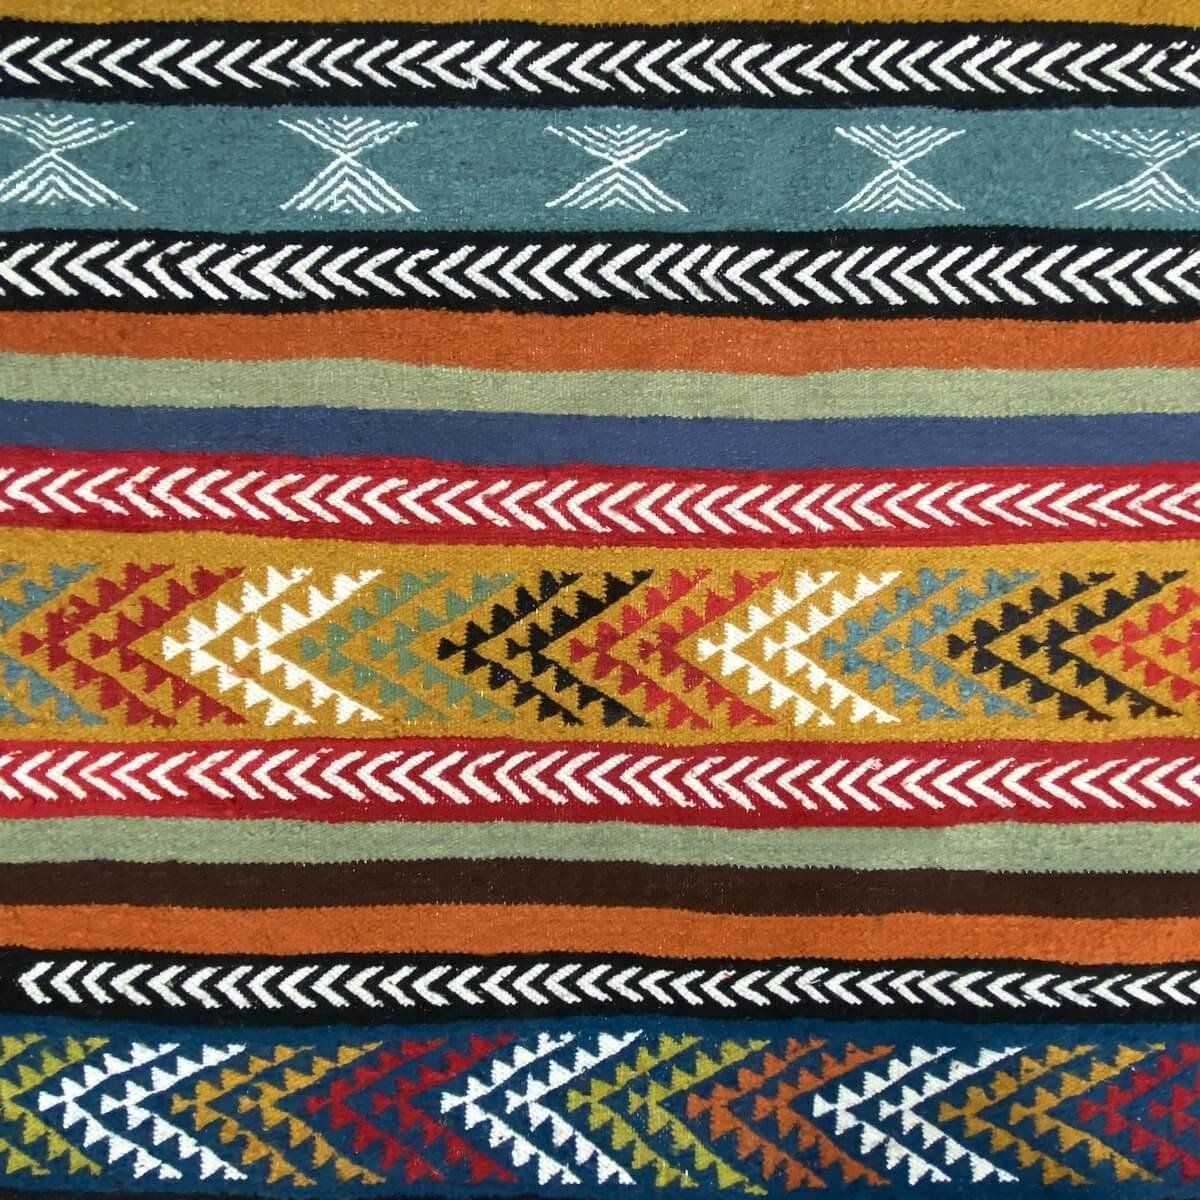 Tapete berbere Tapete Kilim Beri 100x150 Multicor (Tecidos à mão, Lã) Tapete tunisiano kilim, estilo marroquino. Tapete retangul